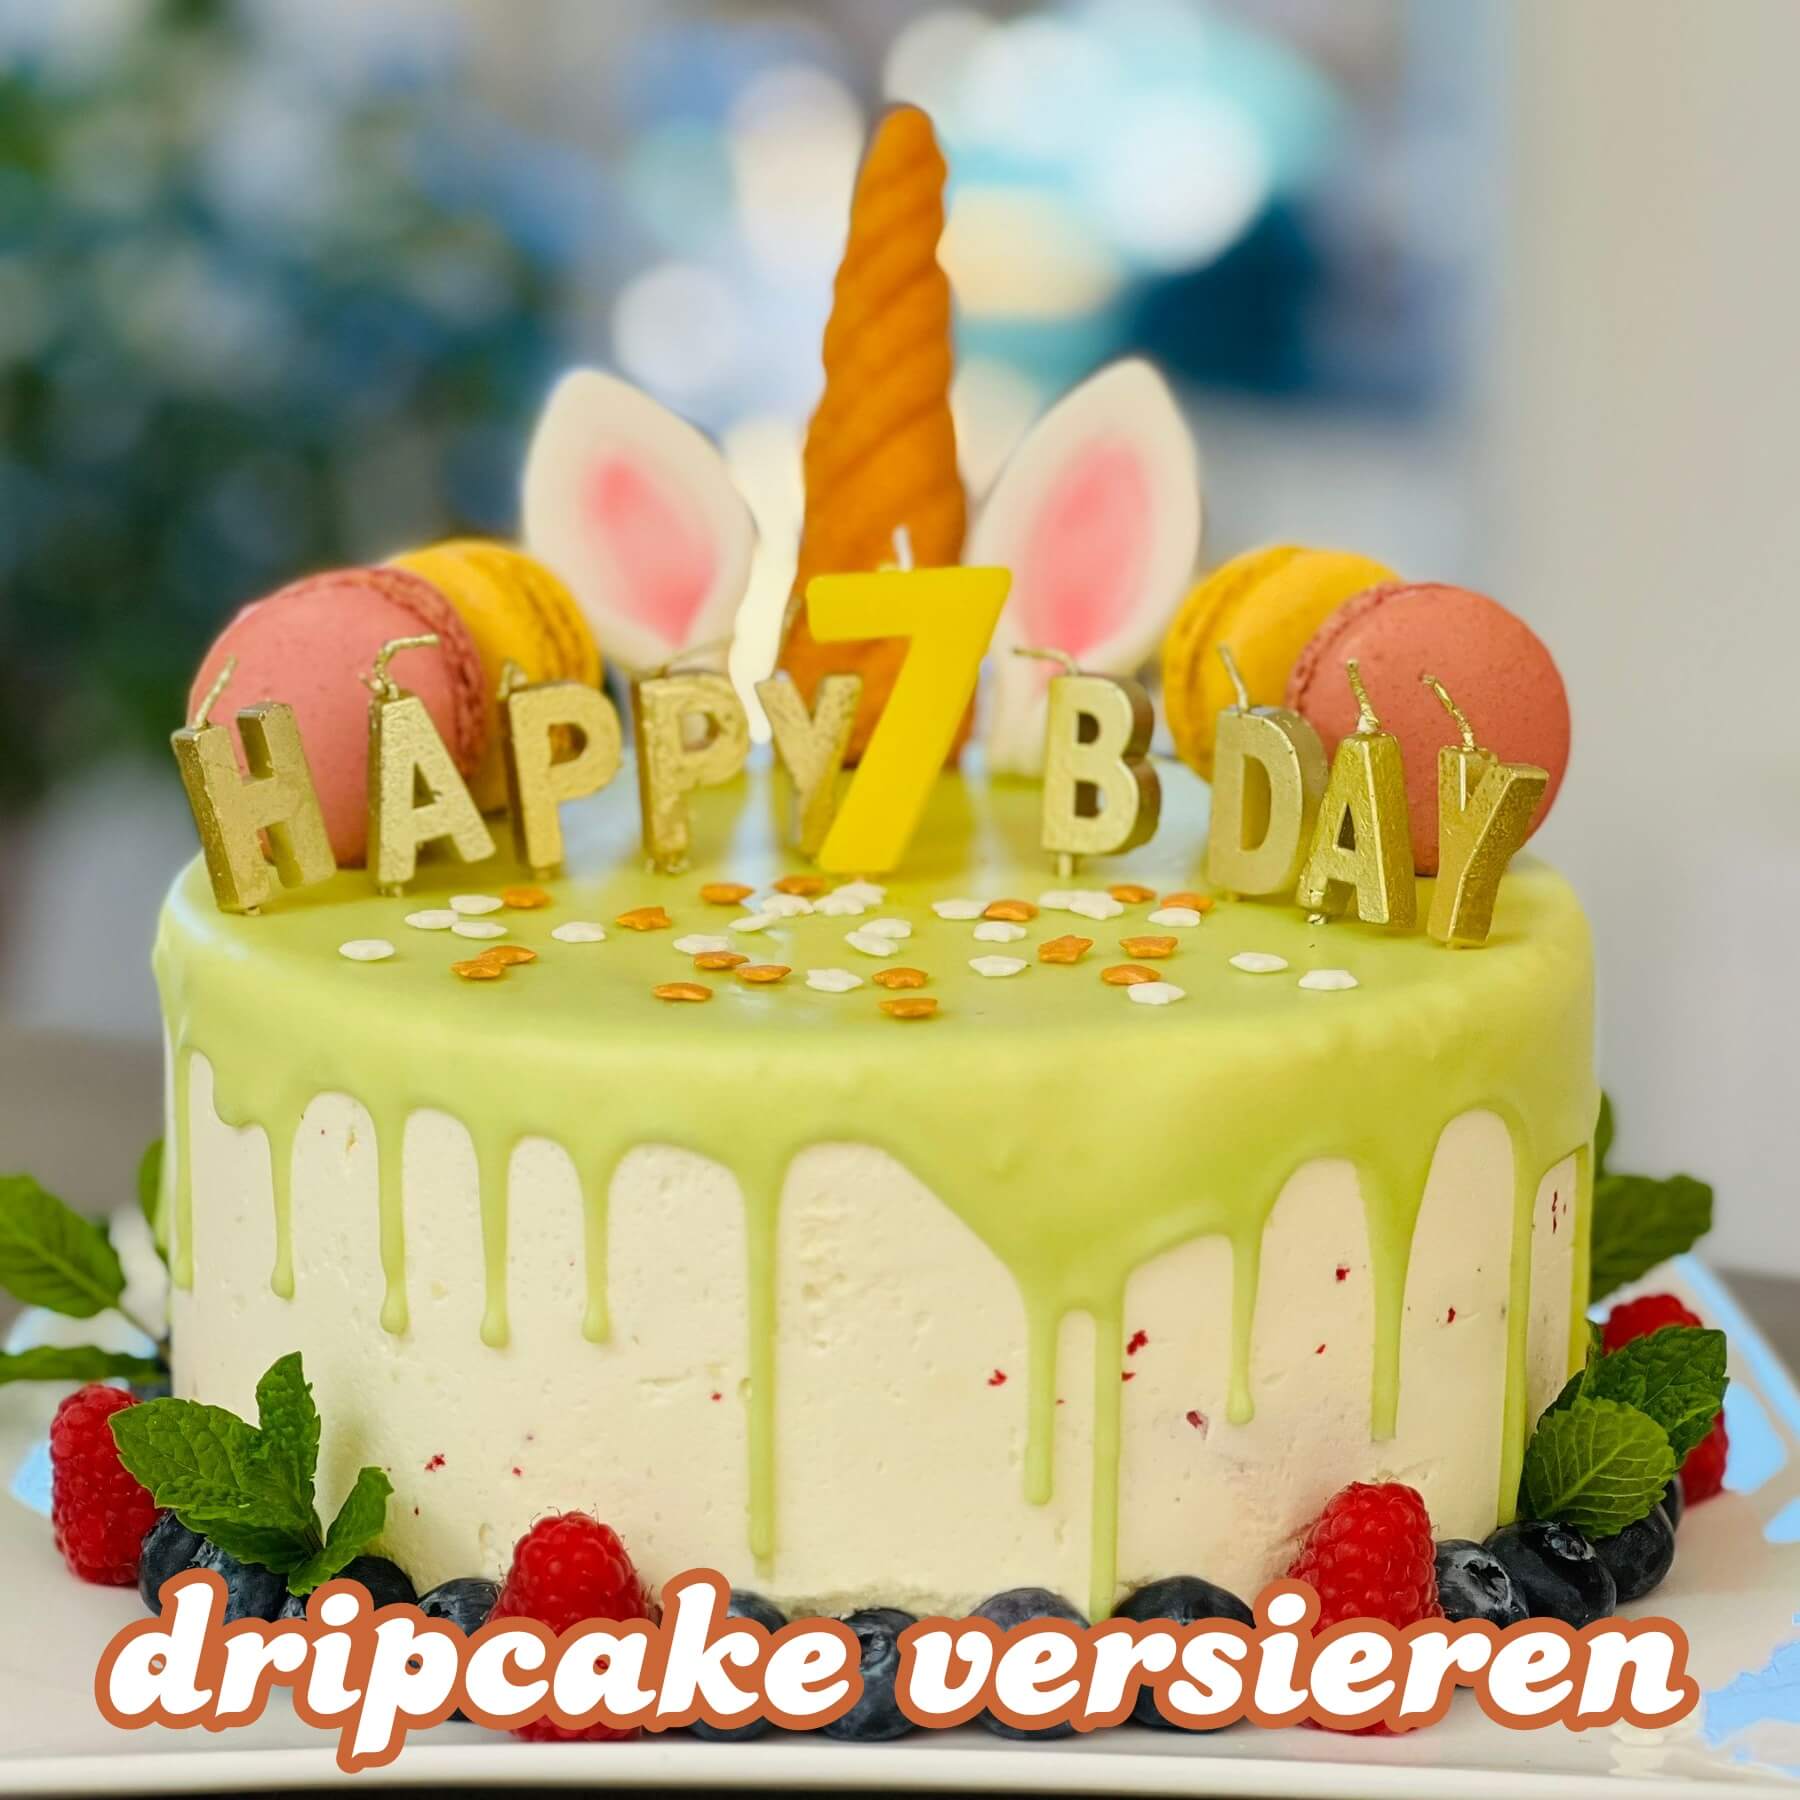 Dripcake versieren: leuke ideeën voor een verjaardagstaart. Ben je op zoek naar een spectaculaire verjaardagstaart die je makkelijk kunt maken? Dan is het ideaal om een dripcake te versieren. Daarom laat ik leuke voorbeelden zien, gemaakt met de HEMA dripcake.